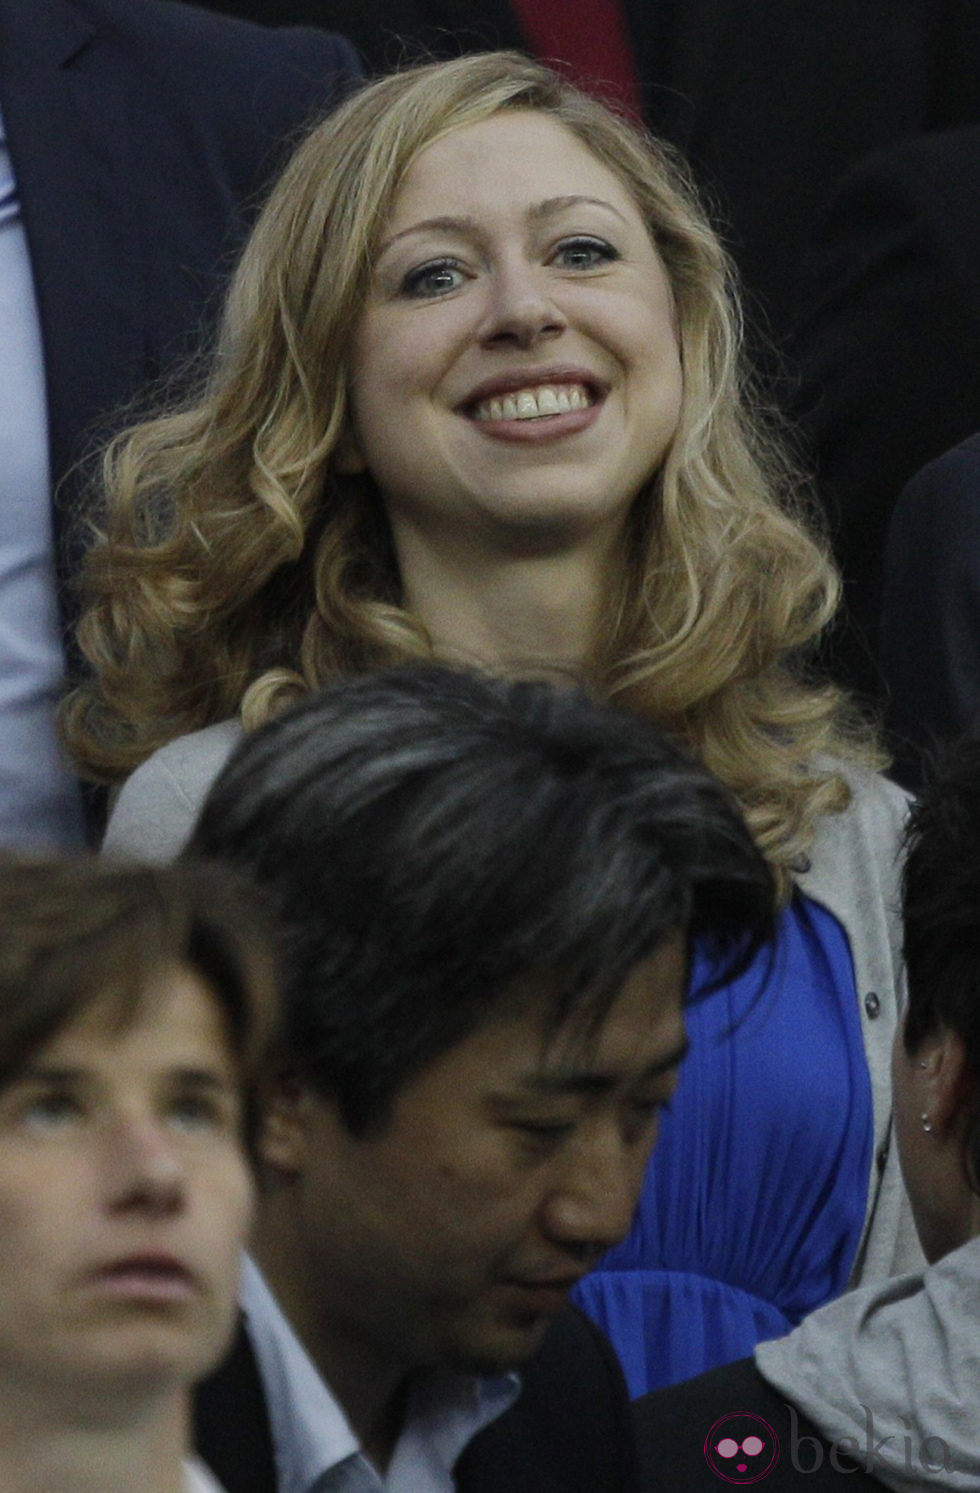 La hija de Bill y Hillary Clinton en la final del Mundial de Fútbol Femenino 2011